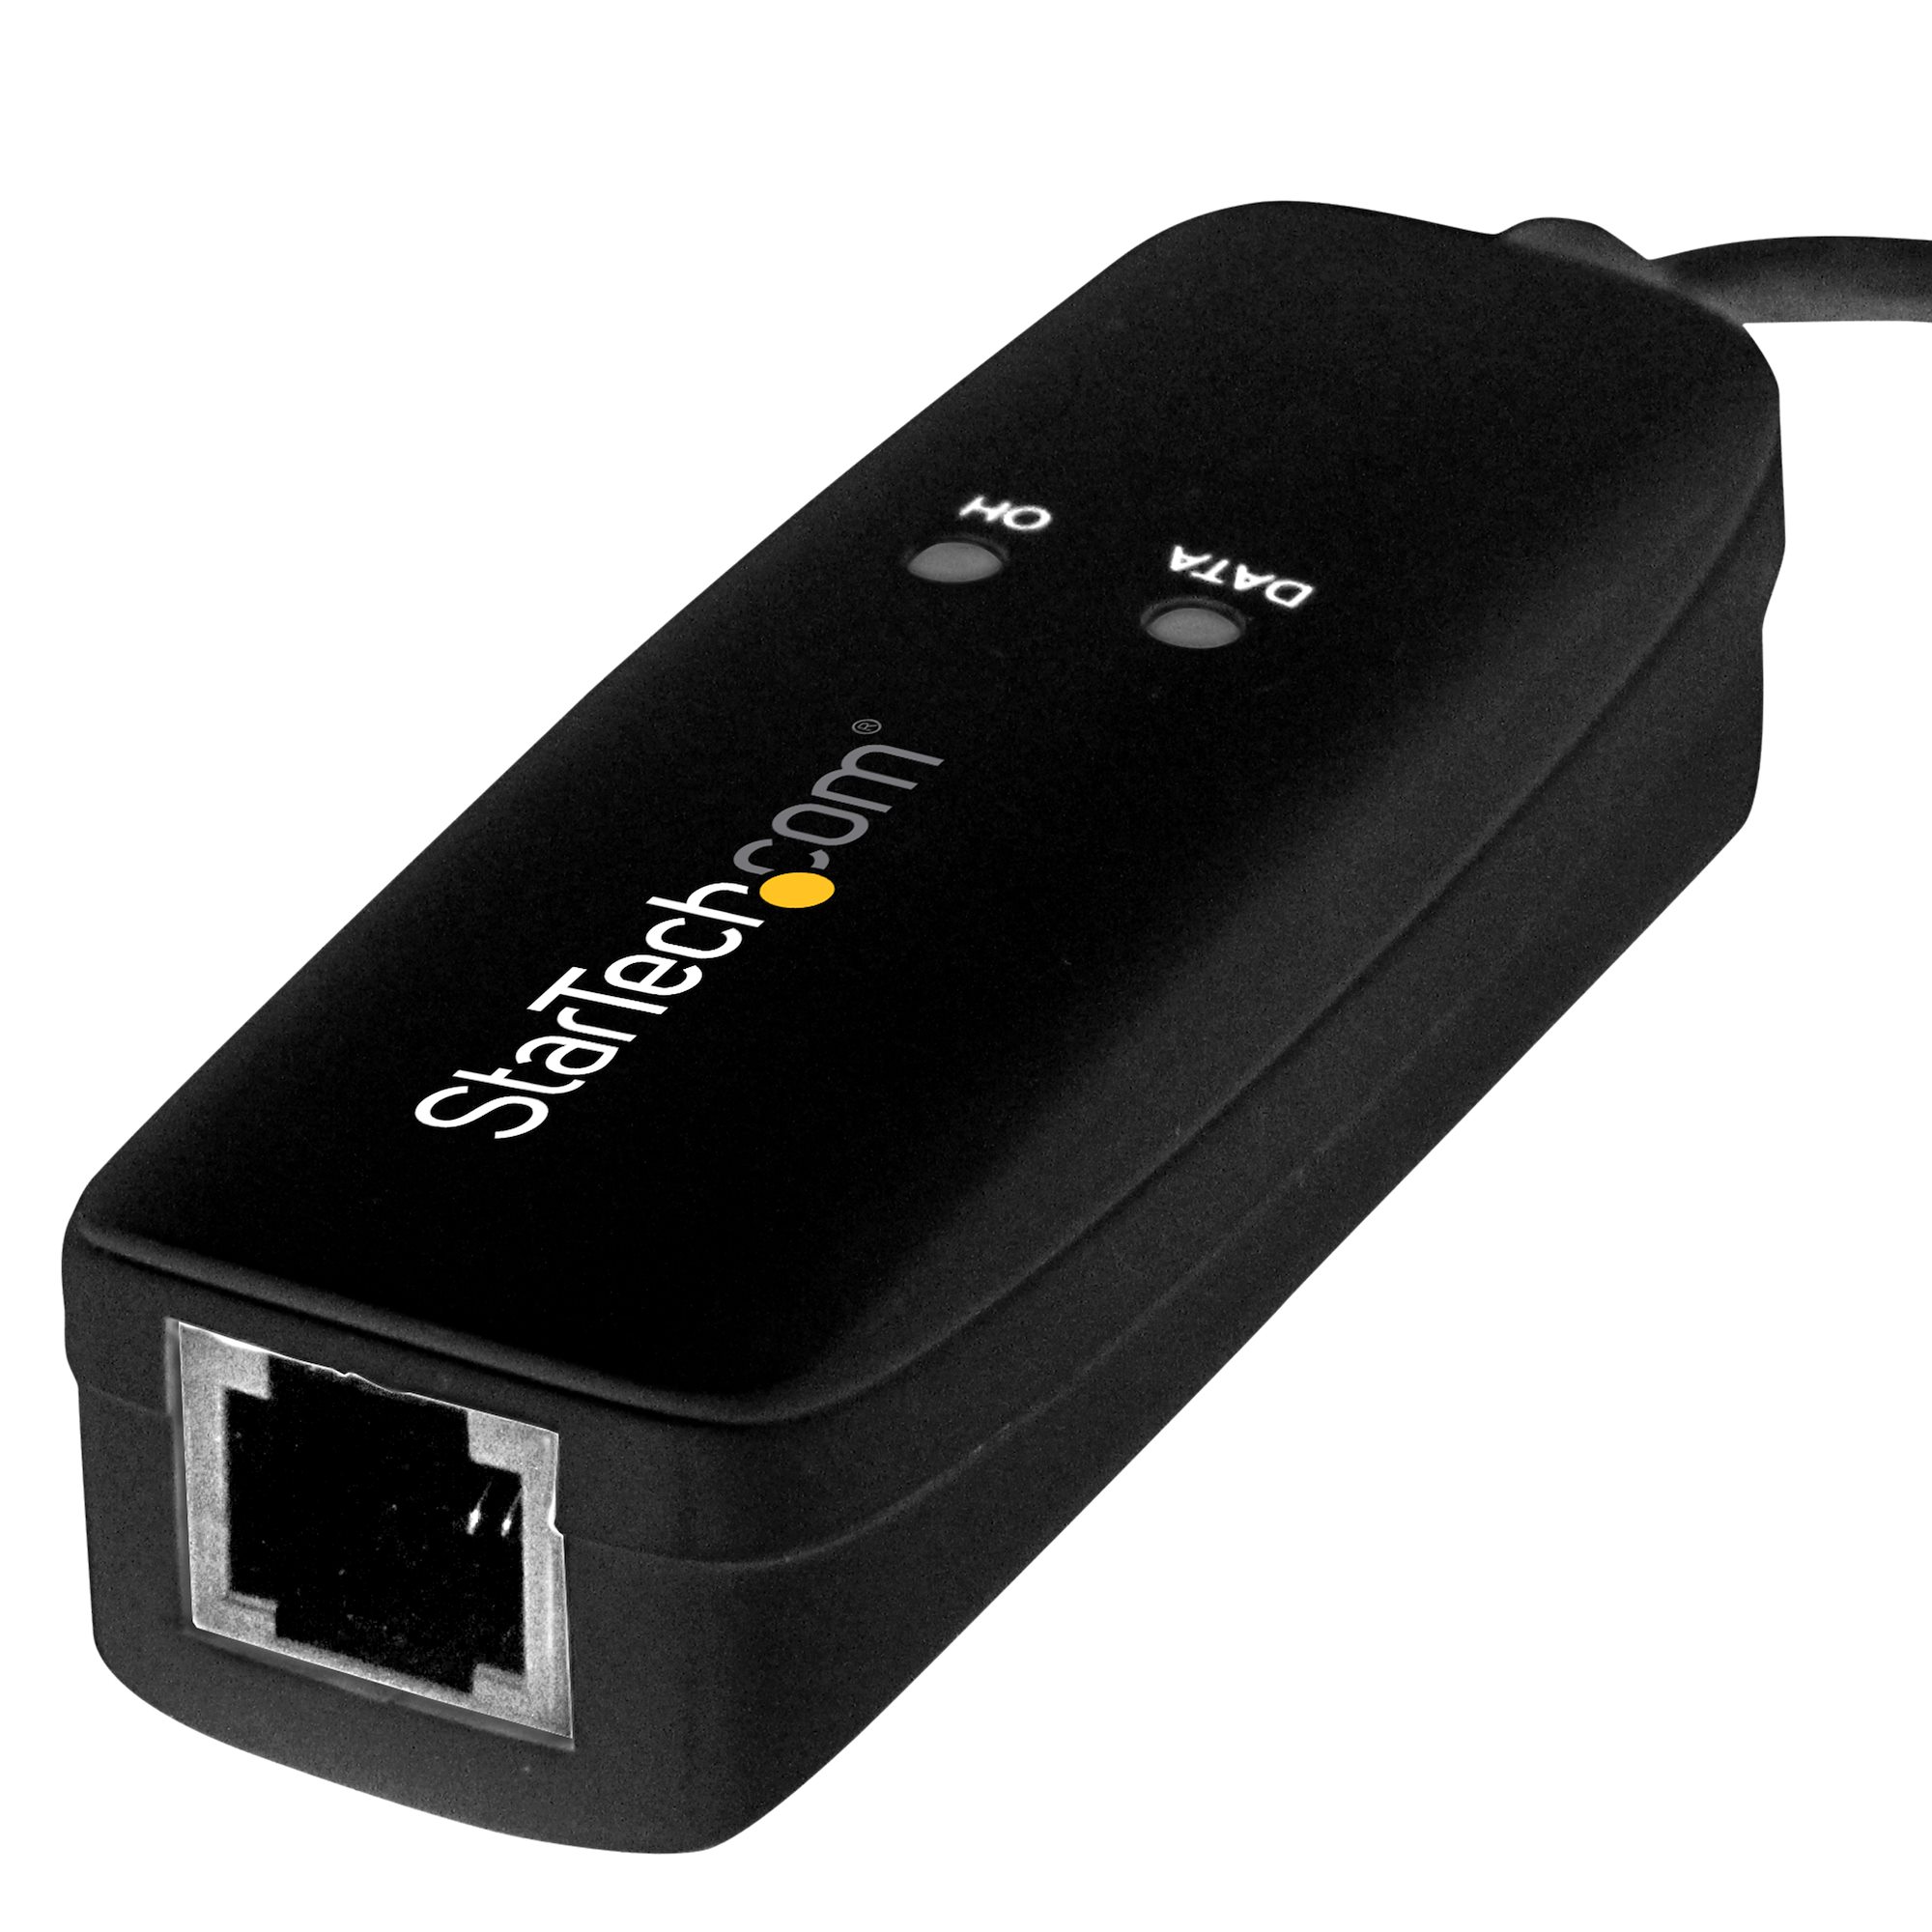 USB 2.0 Modem 56K V.92 - Bluetooth & Telecom Adapters StarTech.com